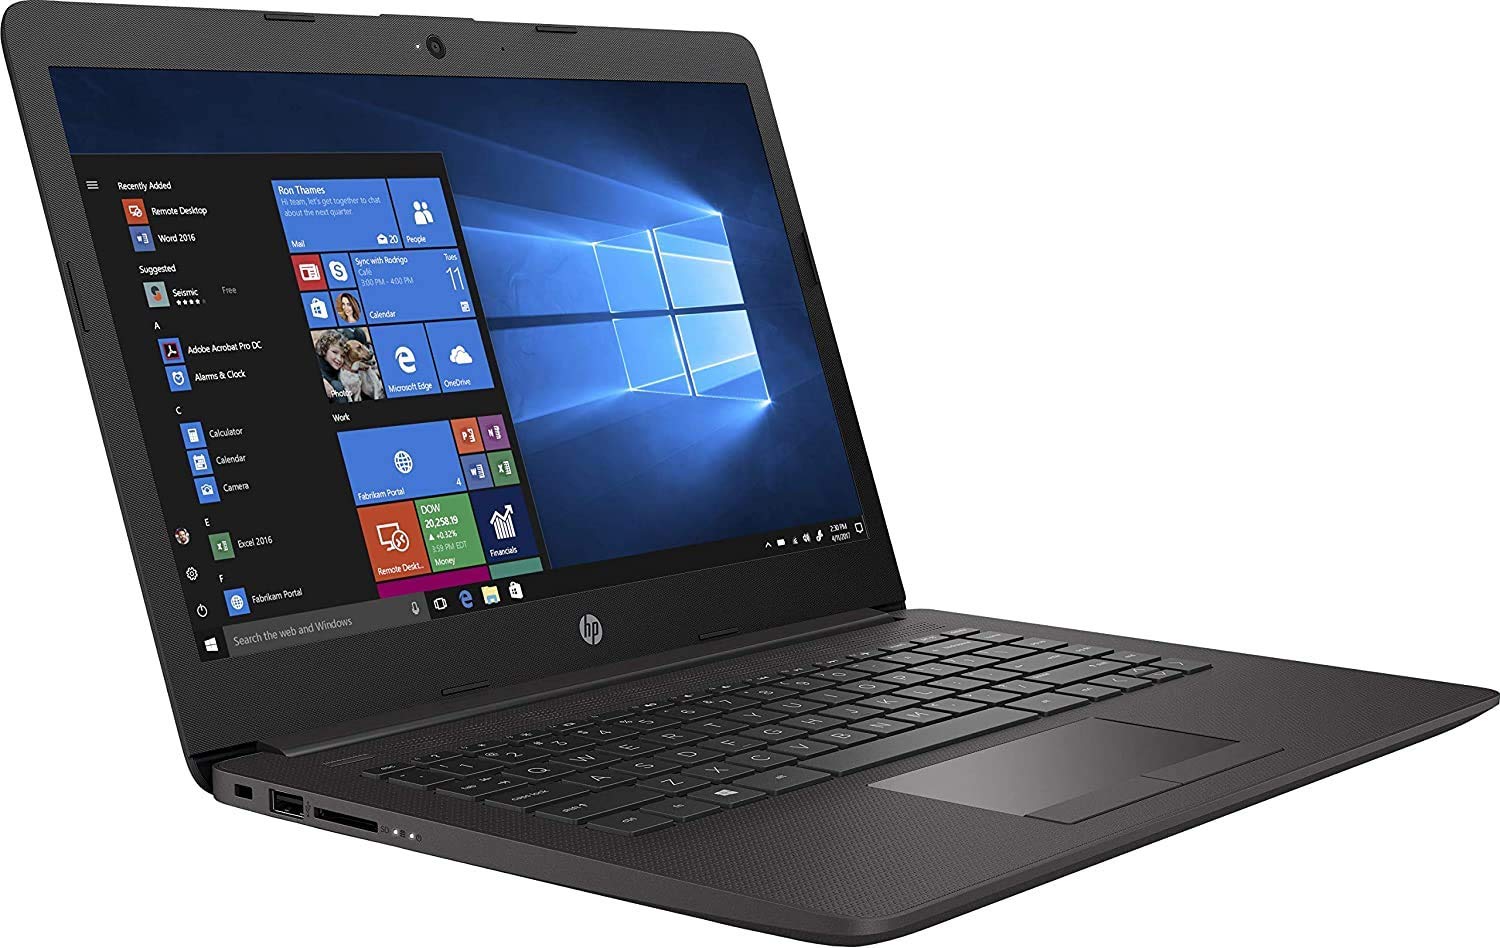 HP 245 G7 AMD Ryzen 5 – 3500U 14 inch Laptop (4GB RAM/1TB HDD/Windows